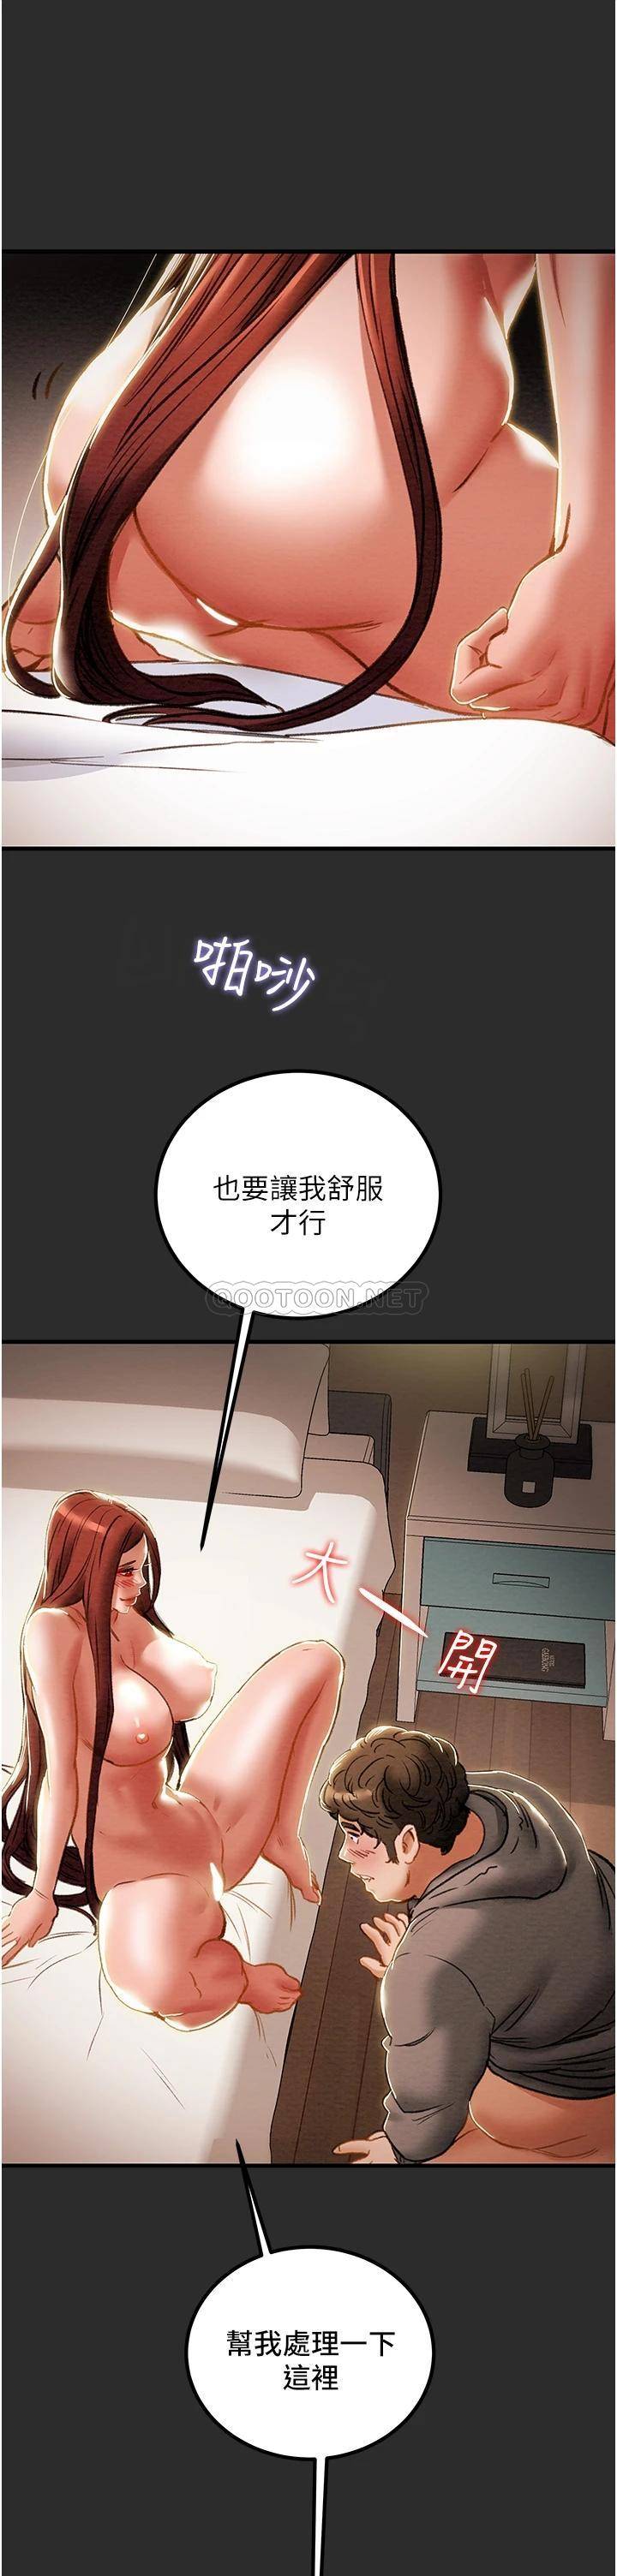 韩国污漫画 純情女攻略計劃 第67话美丽多汁的鲍鱼 29